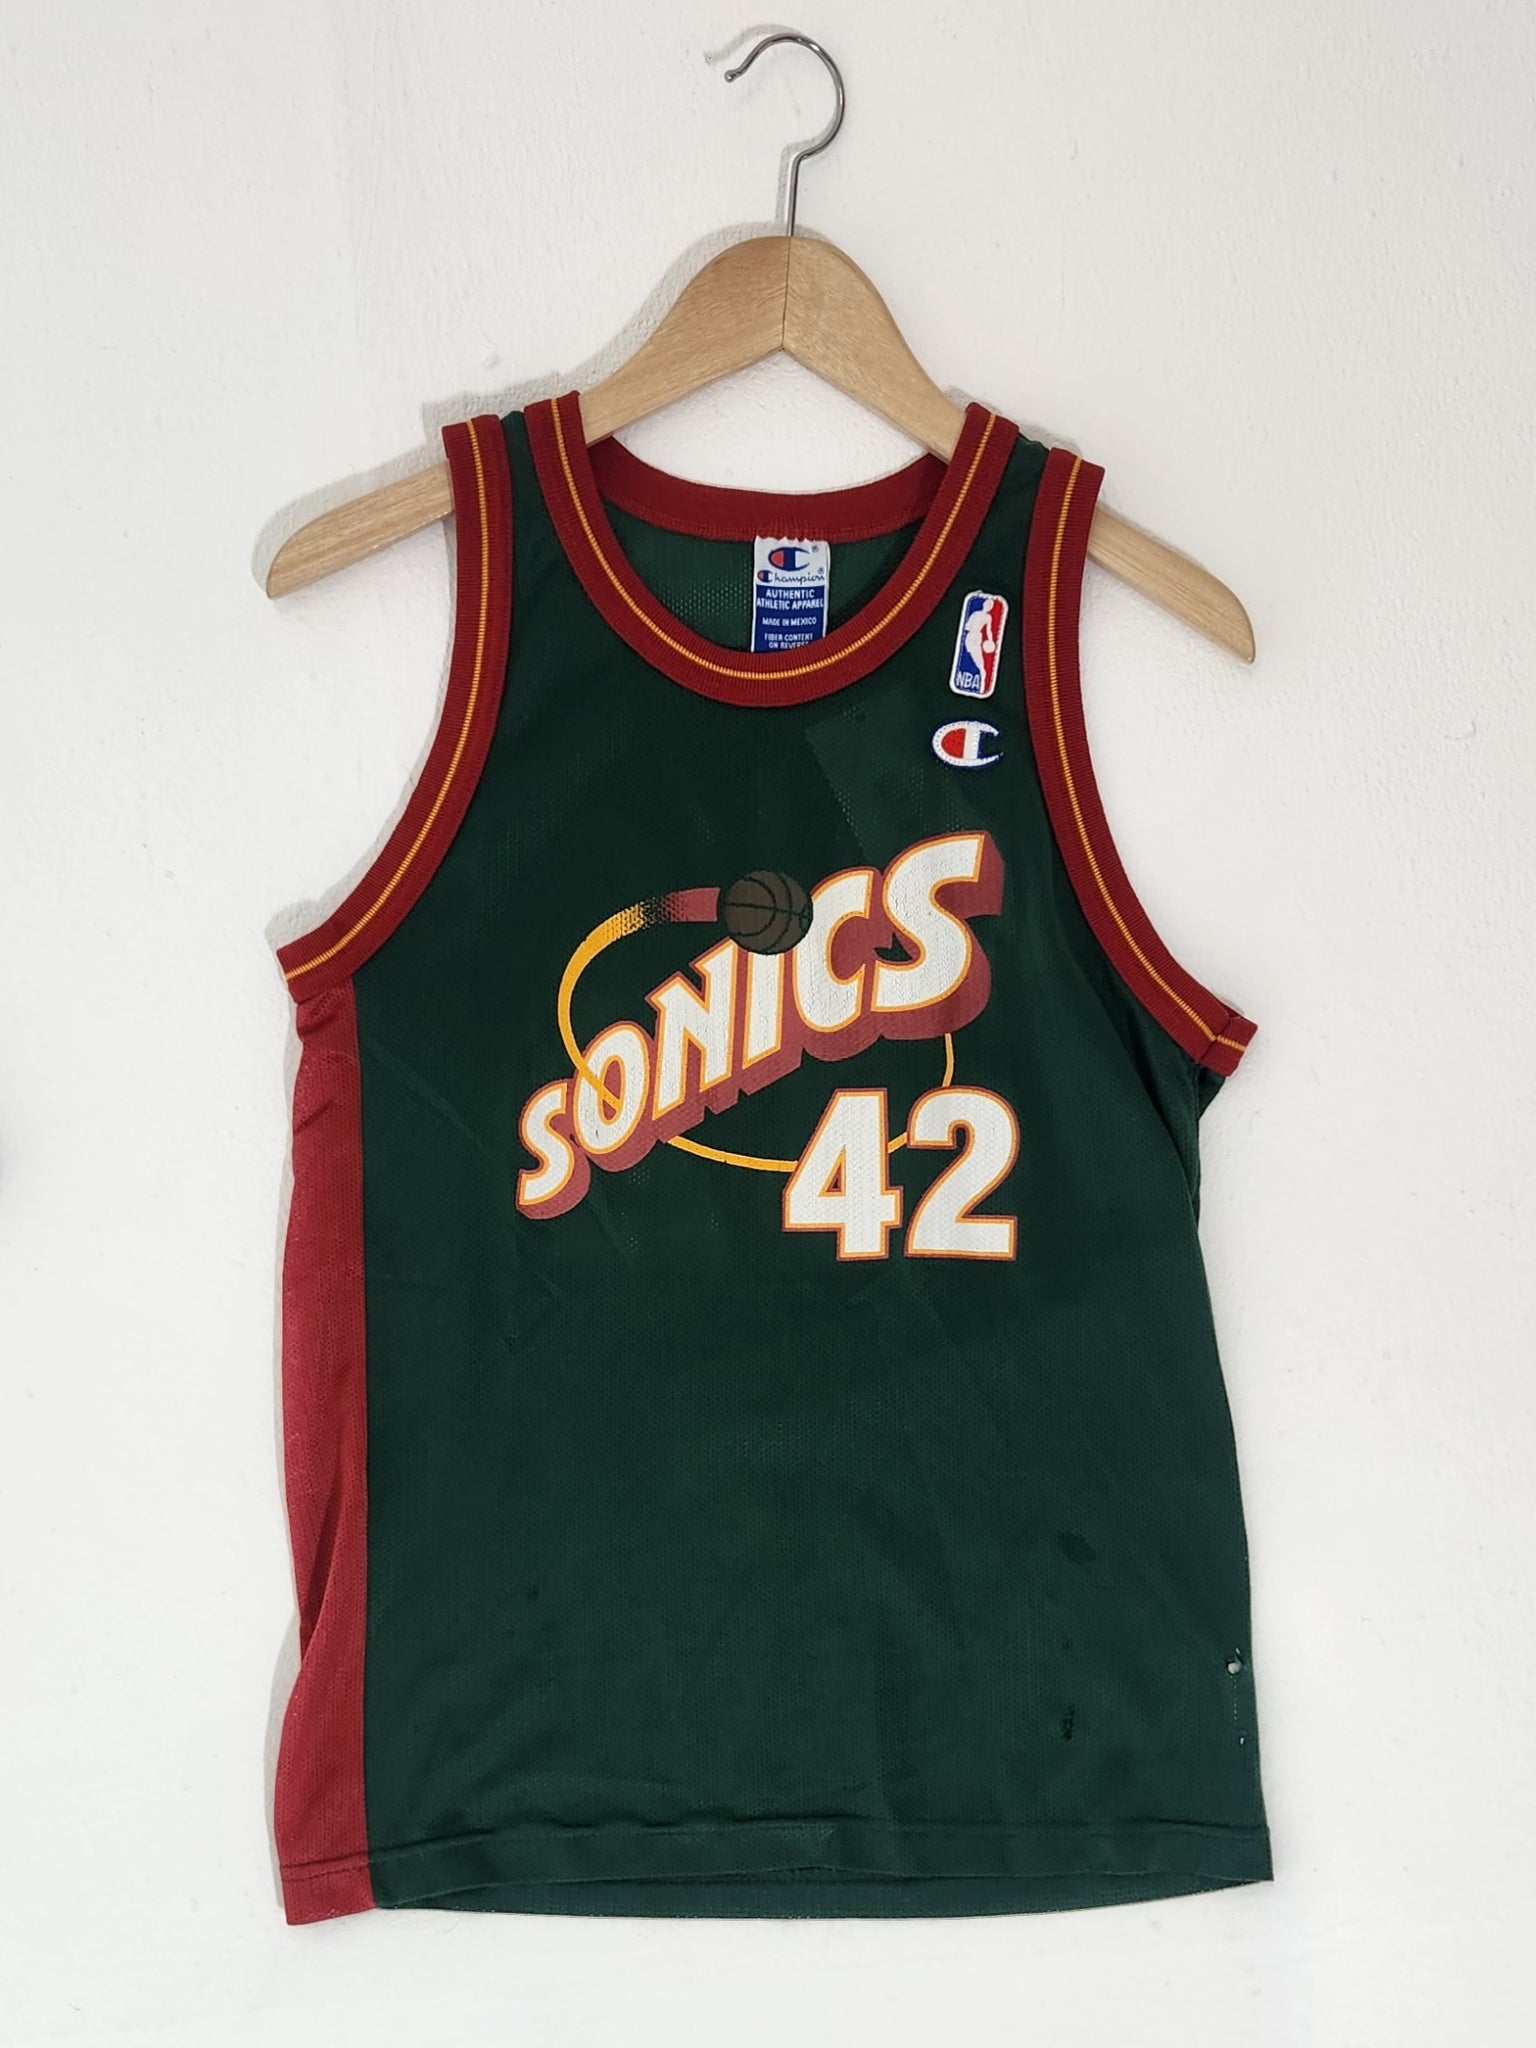 Vintage Pro Basketball Apparel, Jerseys, Fan Shop